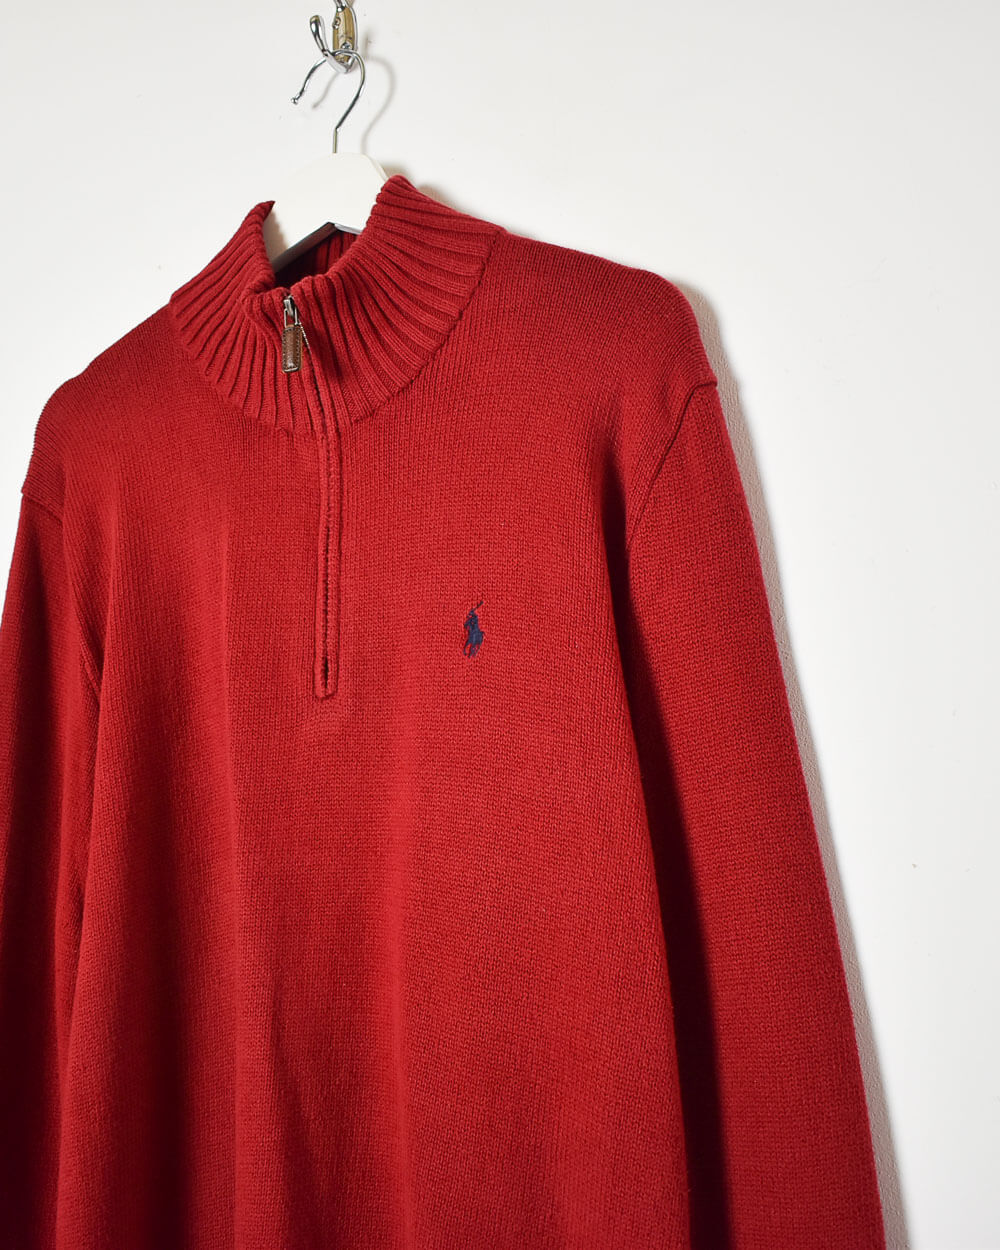 Red Ralph Lauren 1/4 Zip Knitted Sweatshirt - Medium